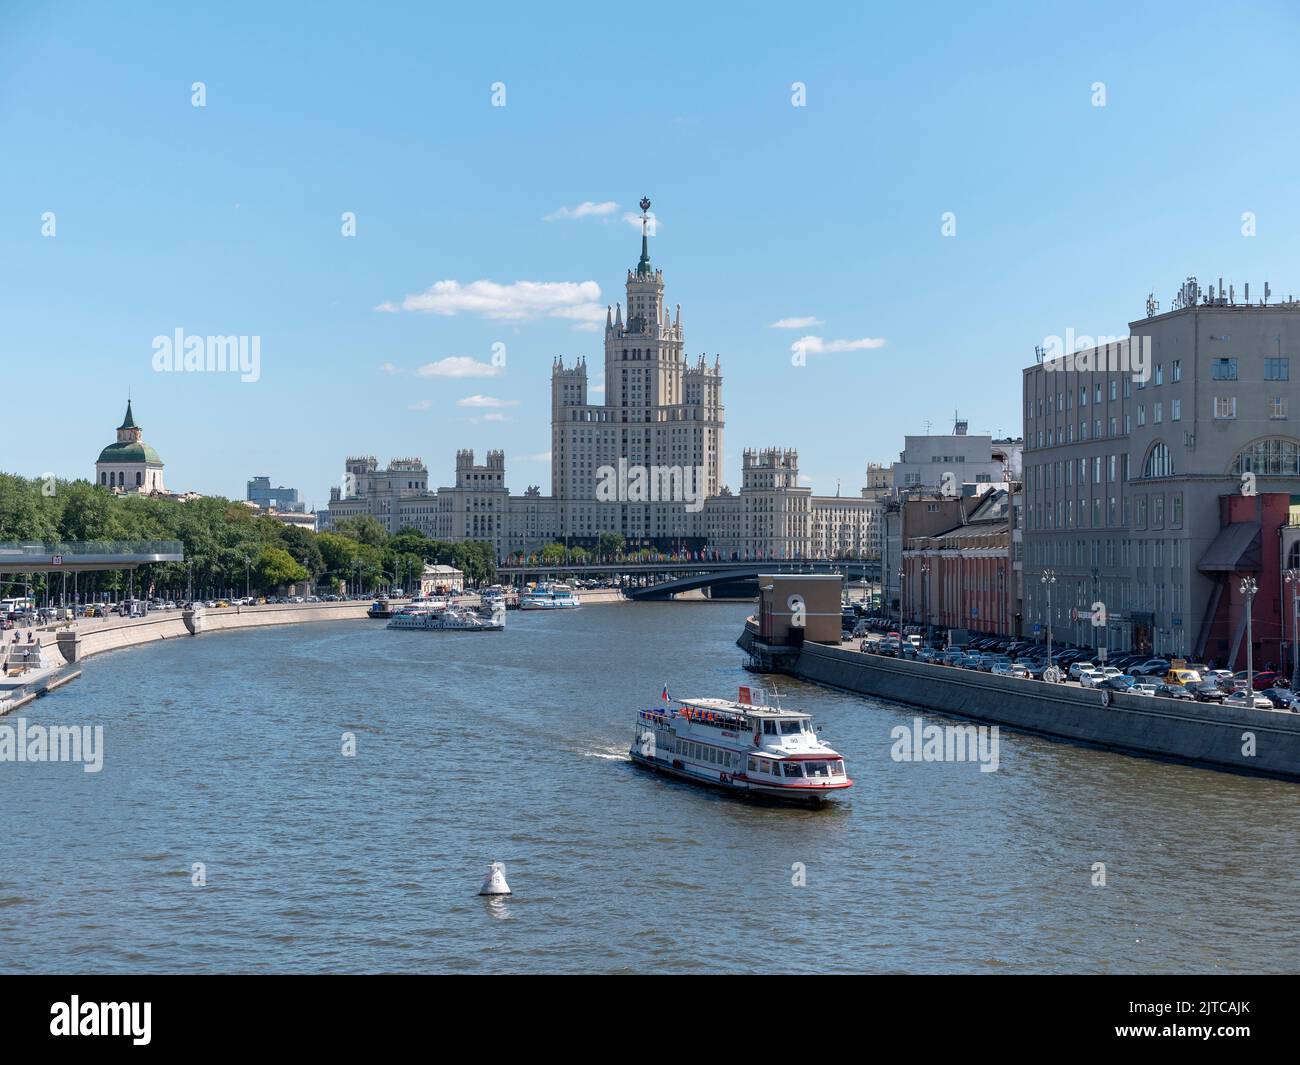 MOSCA, RUSSIA - 22 NOVEMBRE 2018: Grattacielo della torre di Stalin sull'argine di Kotelnicheskaya. Foto Stock